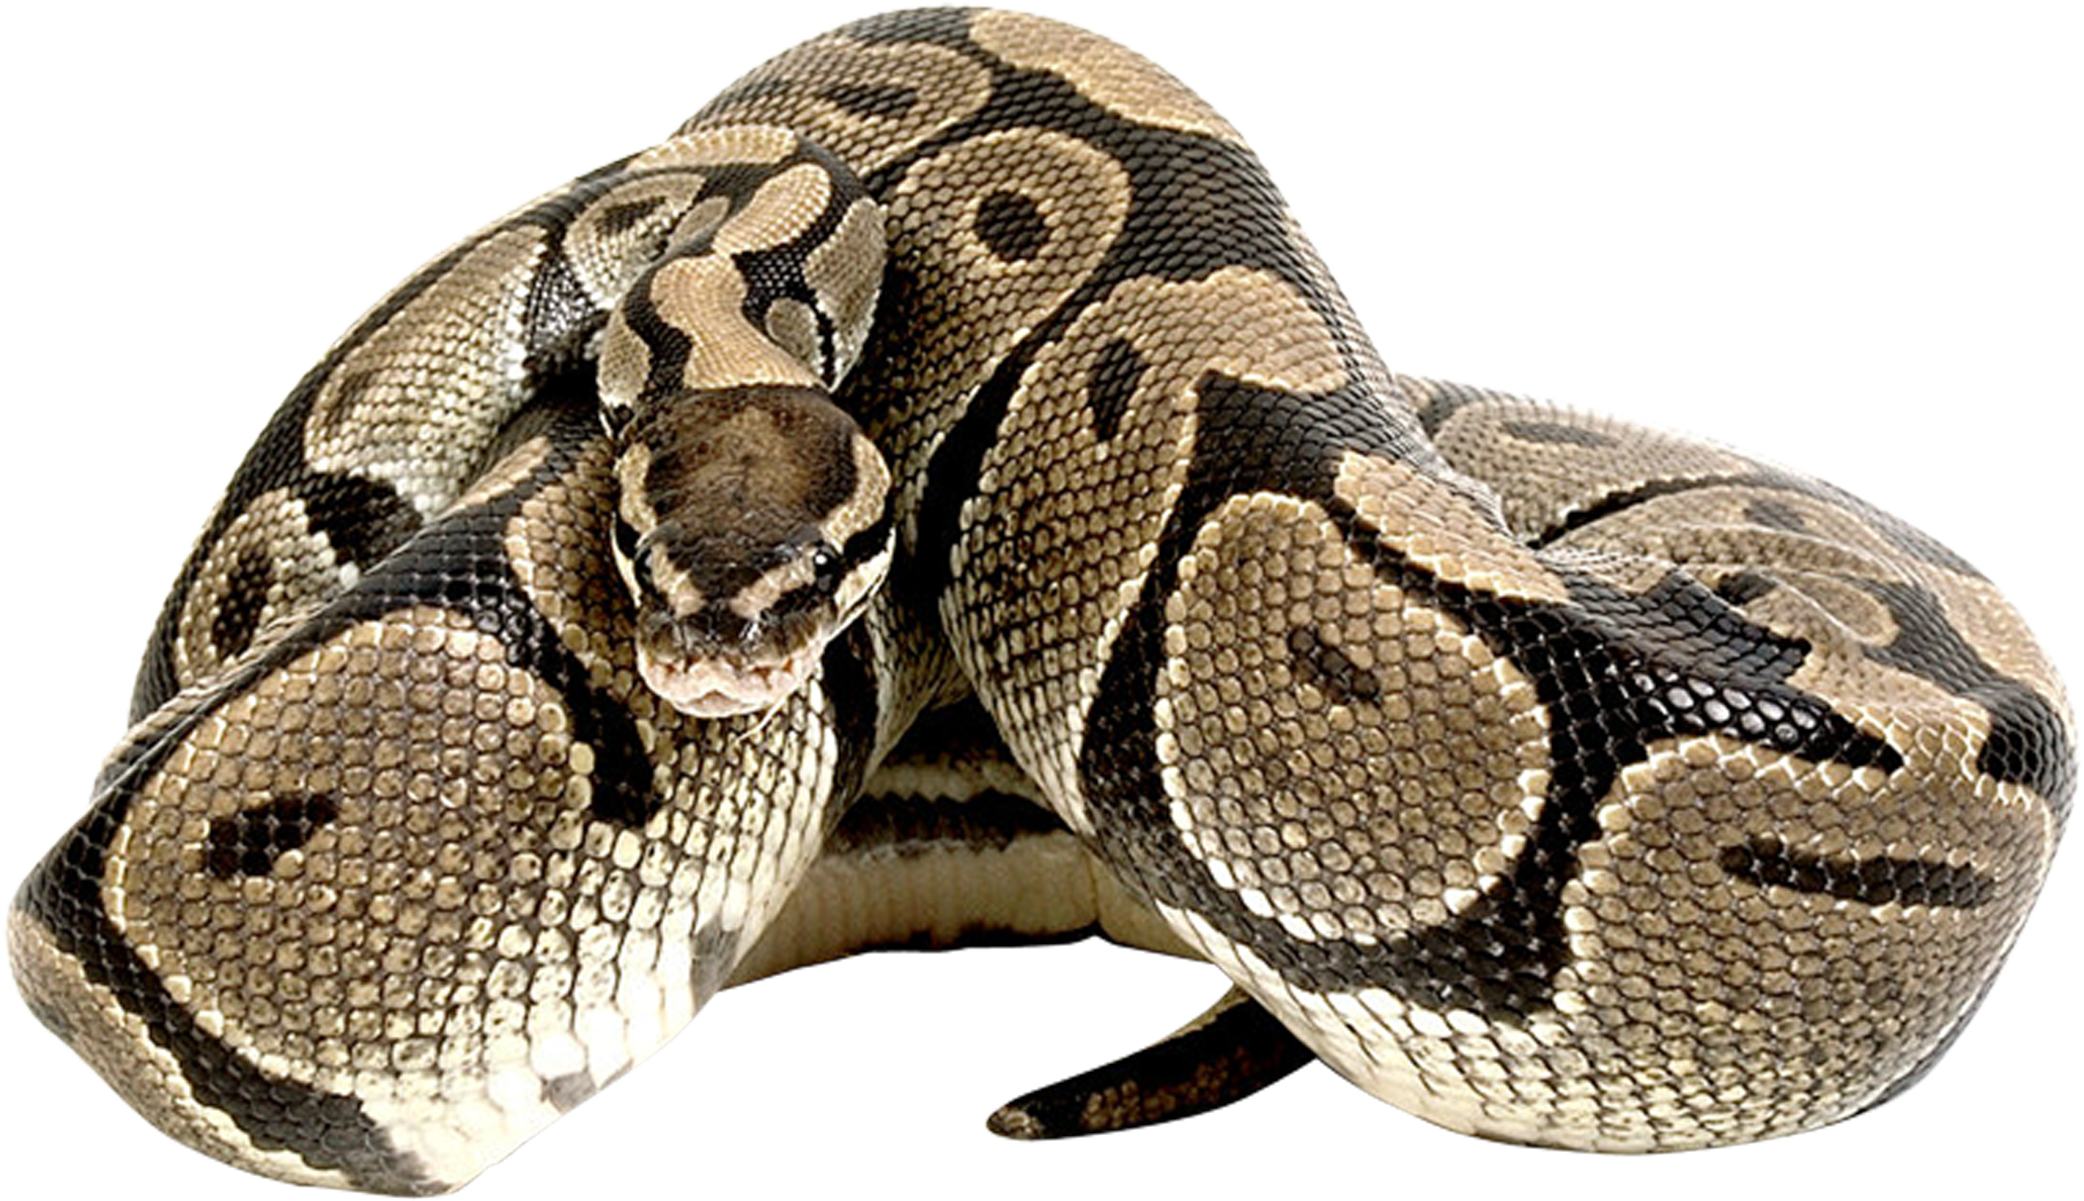 Imagen Transparente de Anaconda común